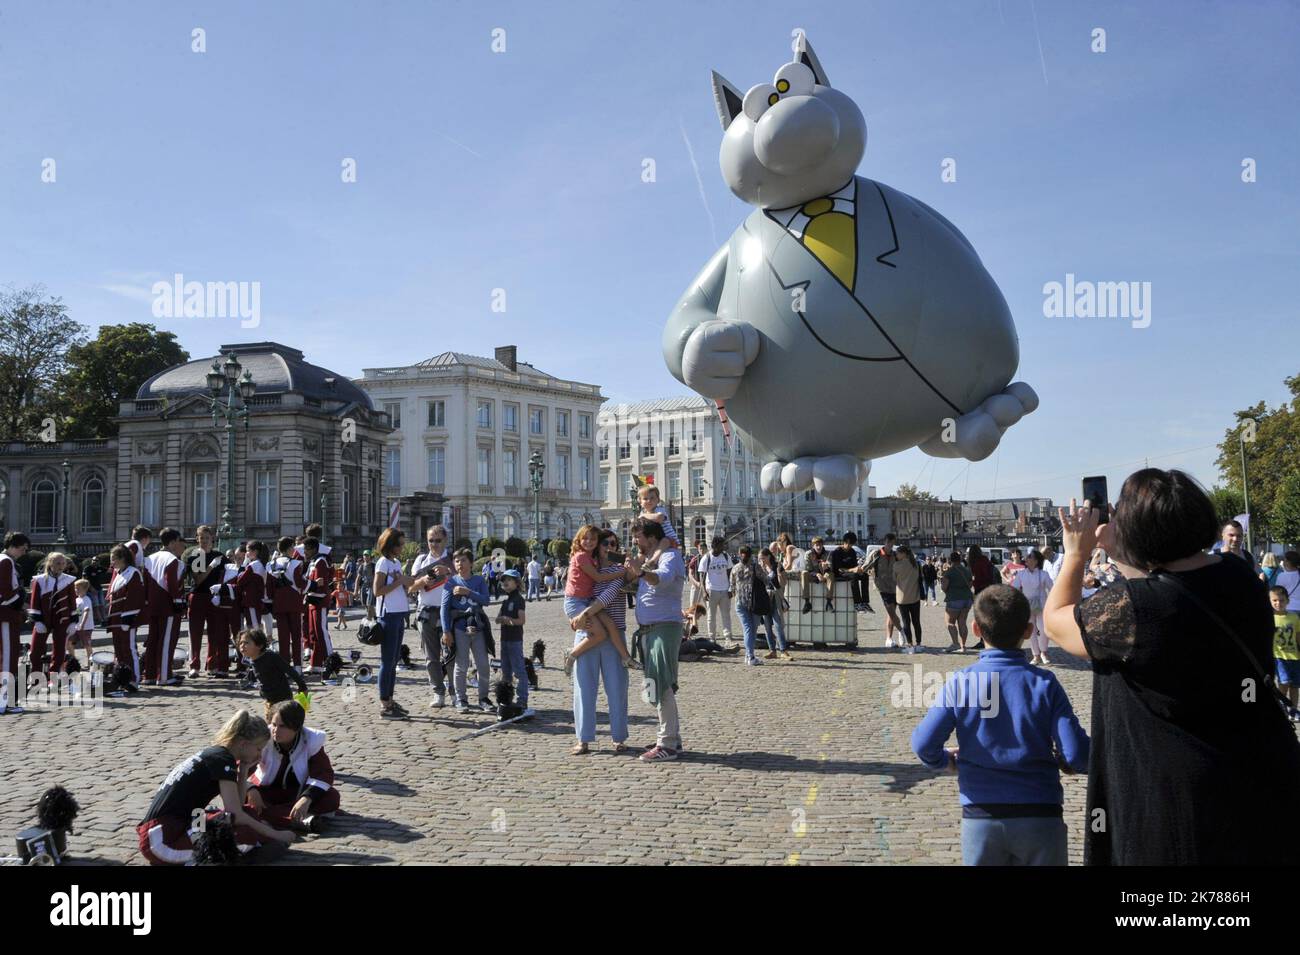 An diesem Sonntag fand in Brüssel im Rahmen des Comic Strip Festivals eine Parade von riesigen Ballons mit dem Bildnis verschiedener weltberühmter Charaktere statt. Eine große Menschenmenge war umgezogen, dem Cortege zu folgen und bewunderte auch Darth Vader und seine Truppen oder die verschiedenen Fanfaren, die die Parade animierten. Stockfoto